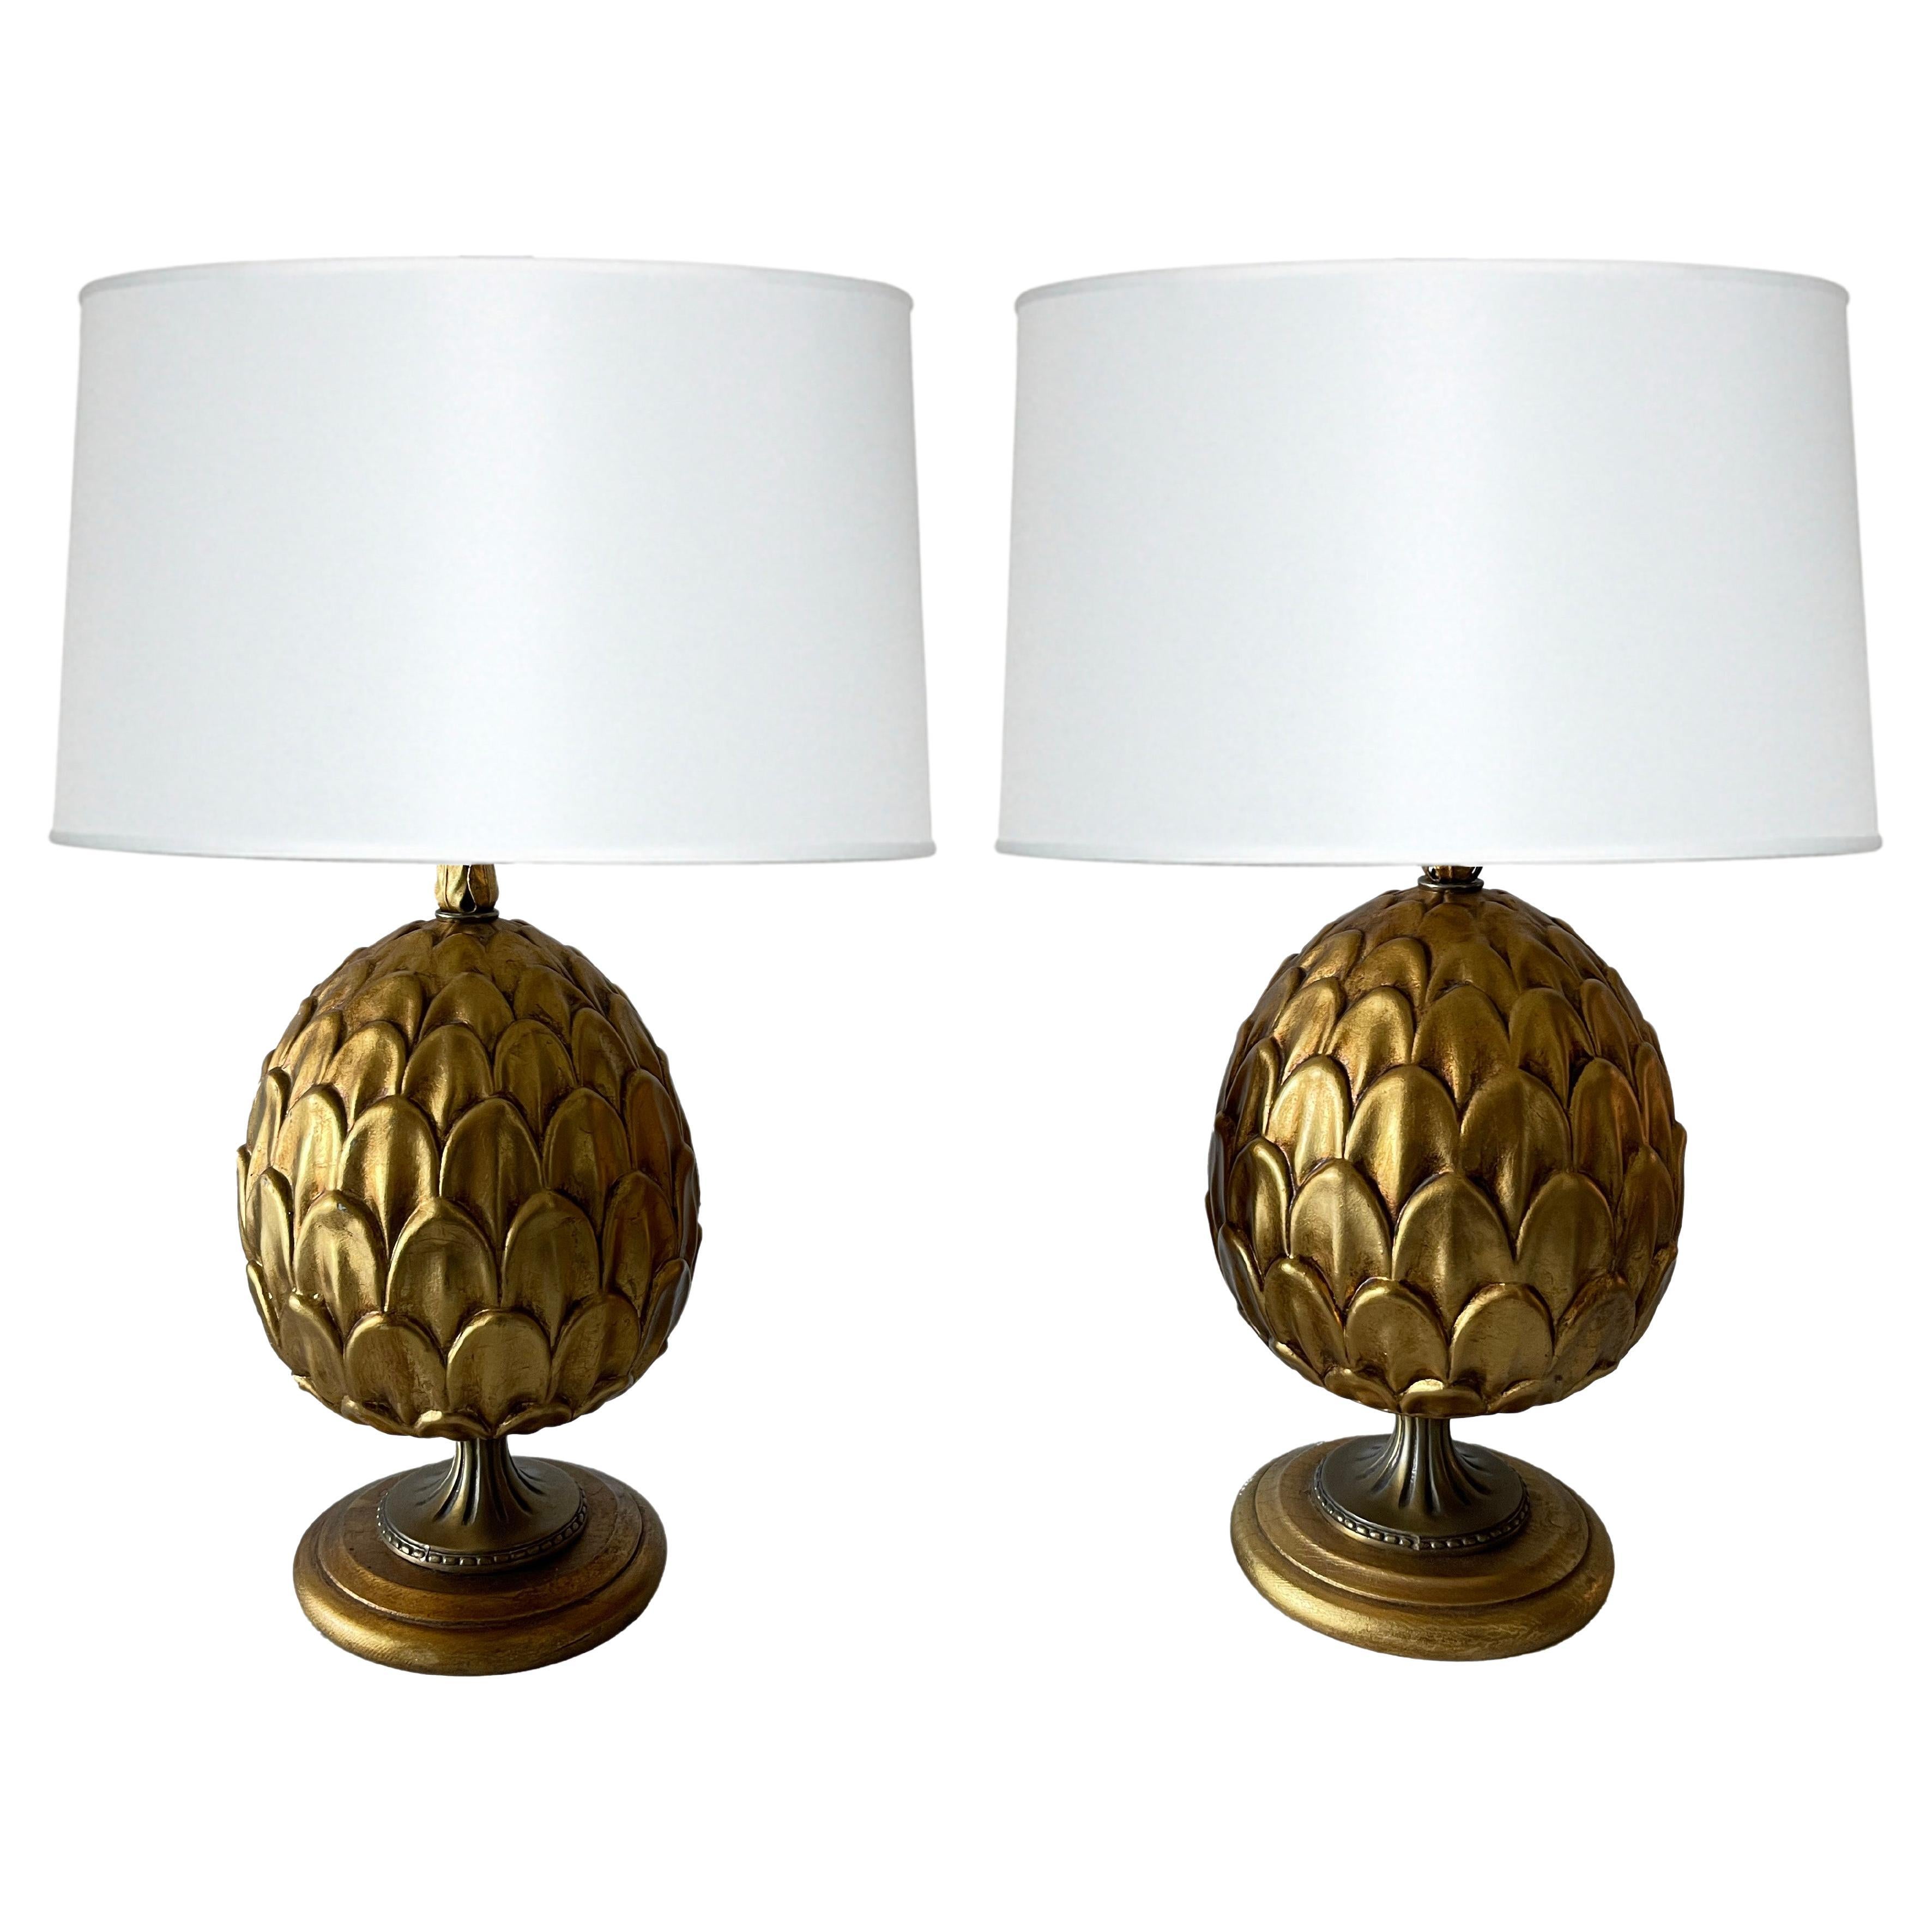 Pair of Italian Gilt Metal Artichoke Lamps For Sale